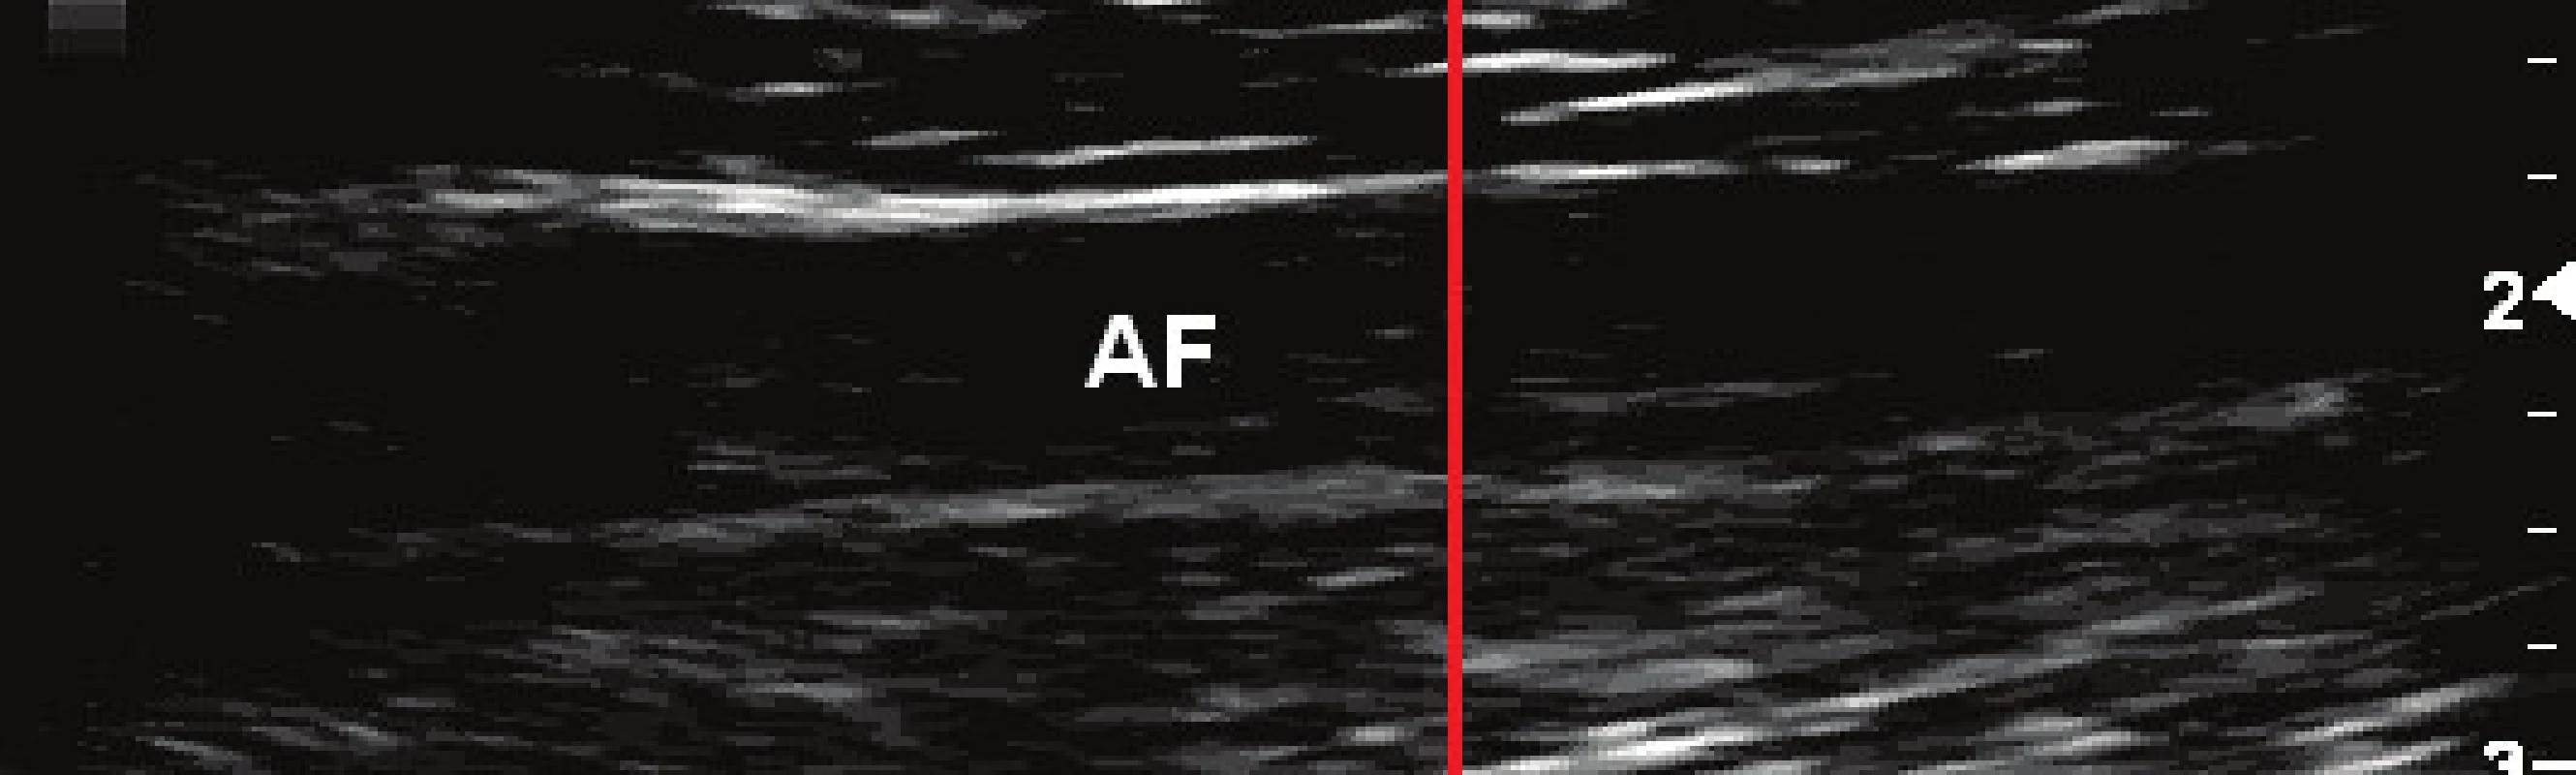 Upravený vstupní snímek stehenní tepny (AF) s vyznačeným směrem pro zisk jasového profilu vedeným kolmo na cévní stěnu (sloupec W = 300 px obrazu).